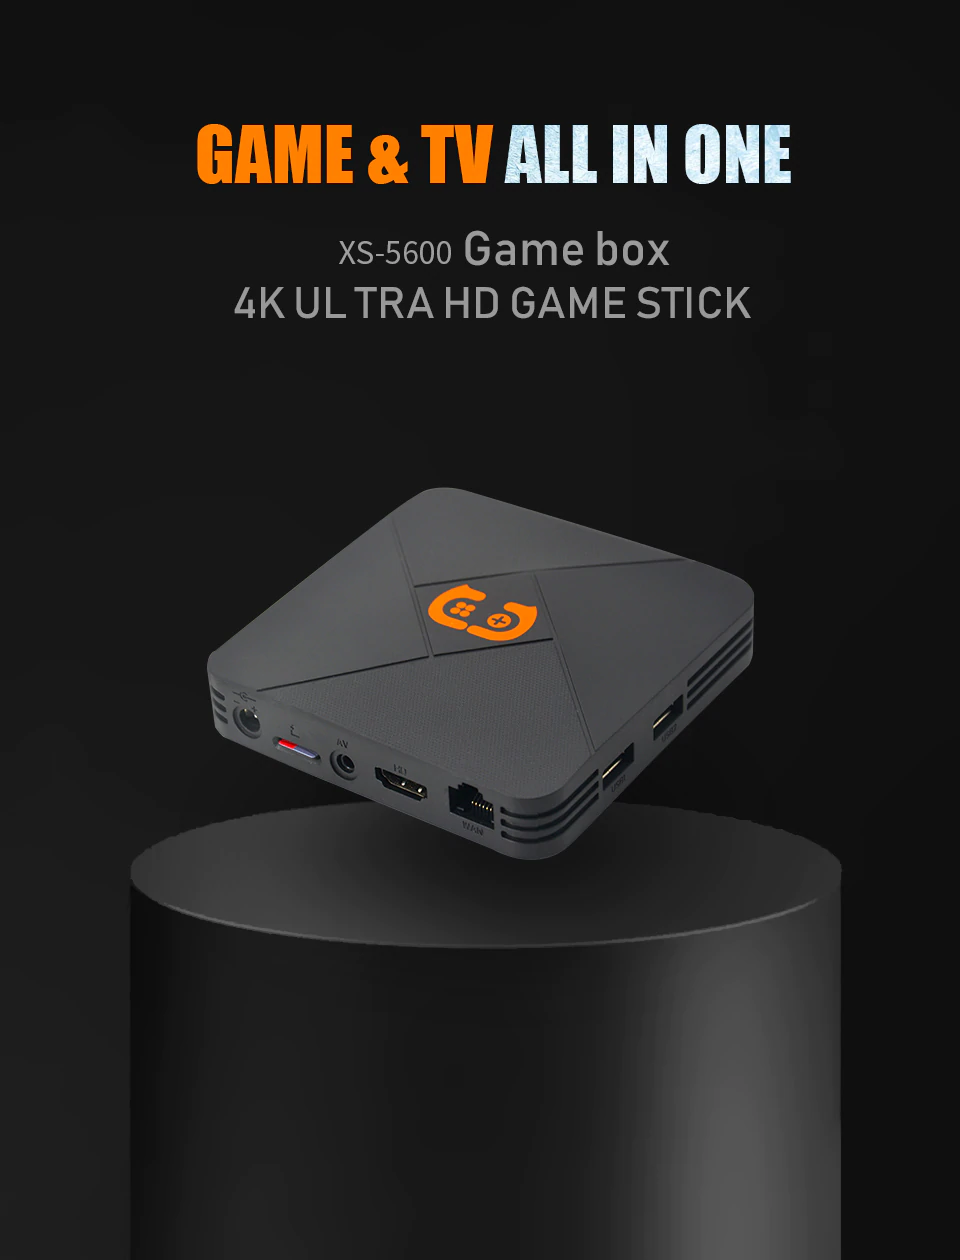 Máy chơi game điện tử 4 nút hdmi tích hợp Tivi Box hỗ trợ tải game lưu game xem TV miễn phí với 5600 games  tay cầm joystick Hỗ trợ phân giải lên 4k HDR Hỗ trợ kết nối thẻ nhớ